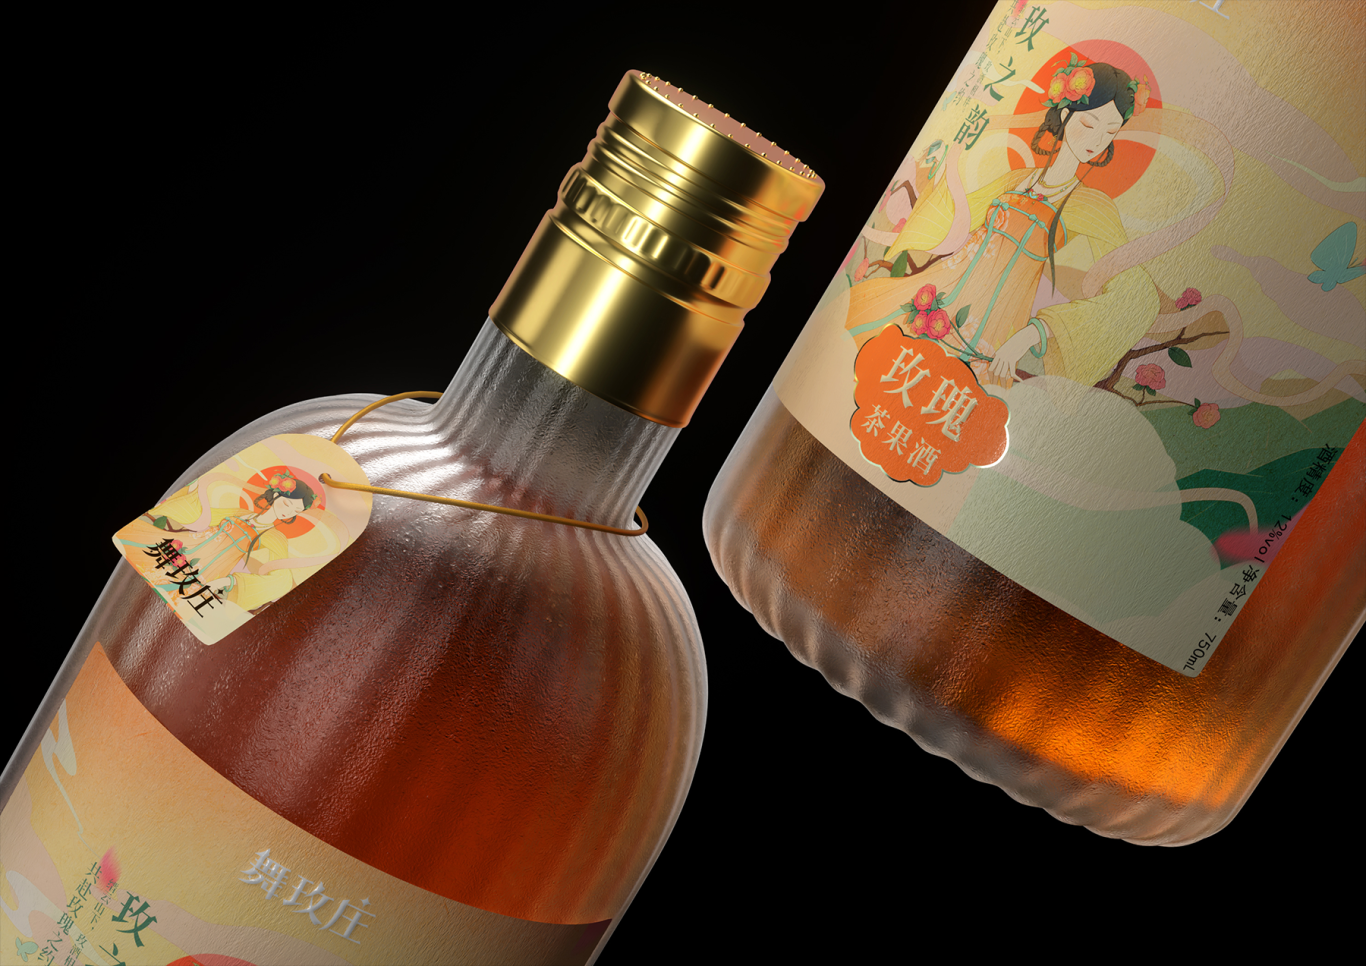 舞玫莊-果酒系列產品包裝設計圖9